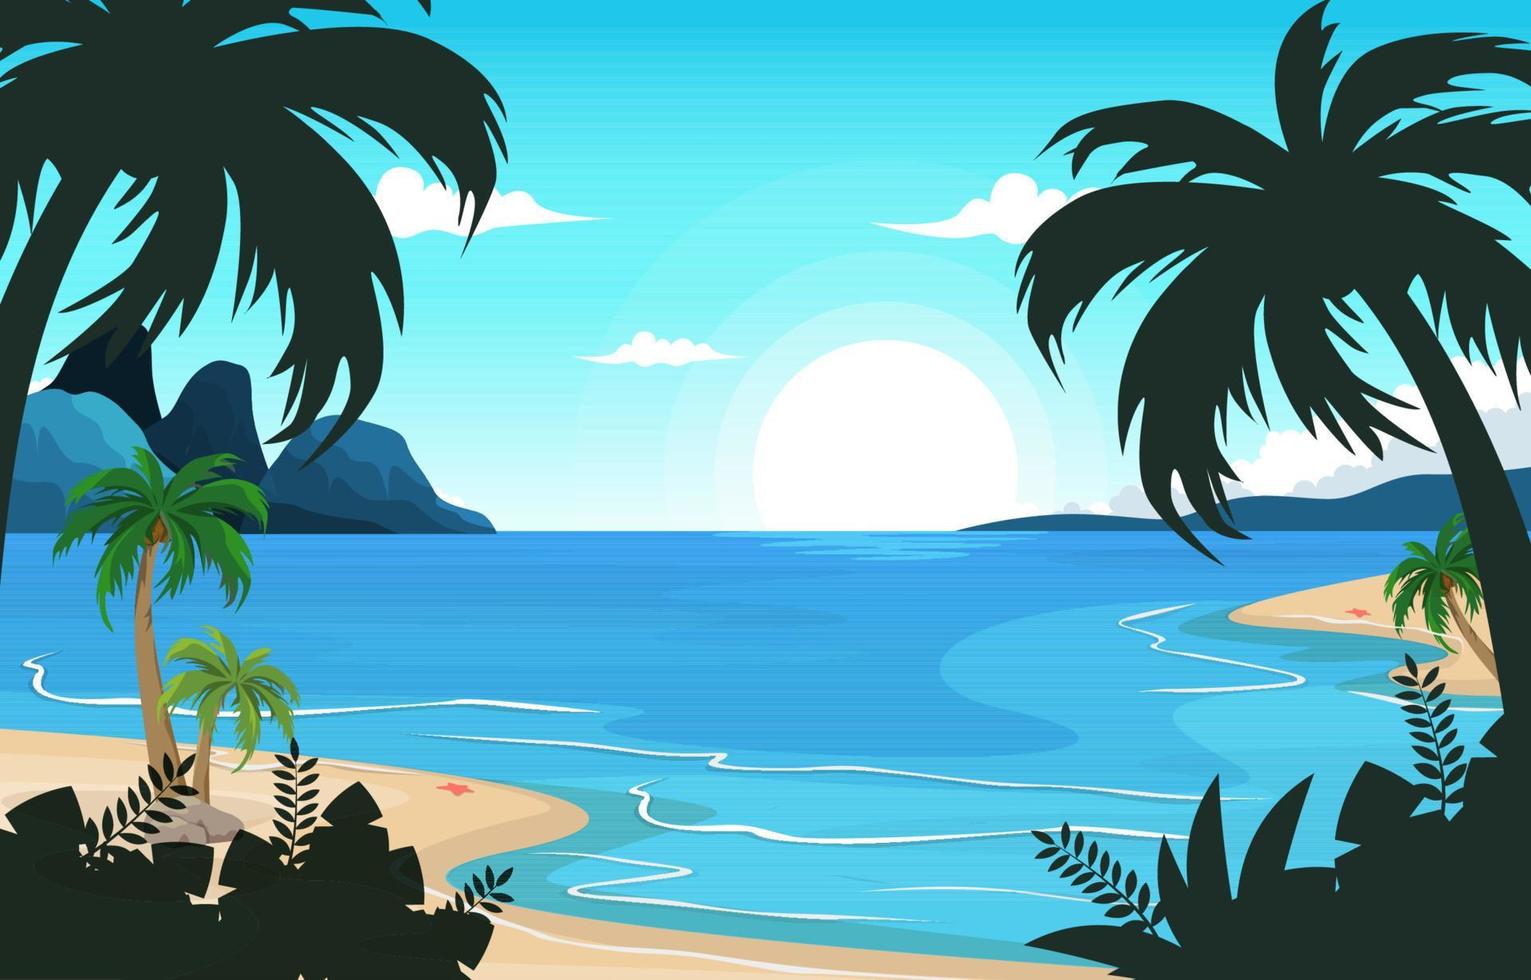 isola spiaggia mare vacanza vacanza tropicale estate illustrazione vettoriale